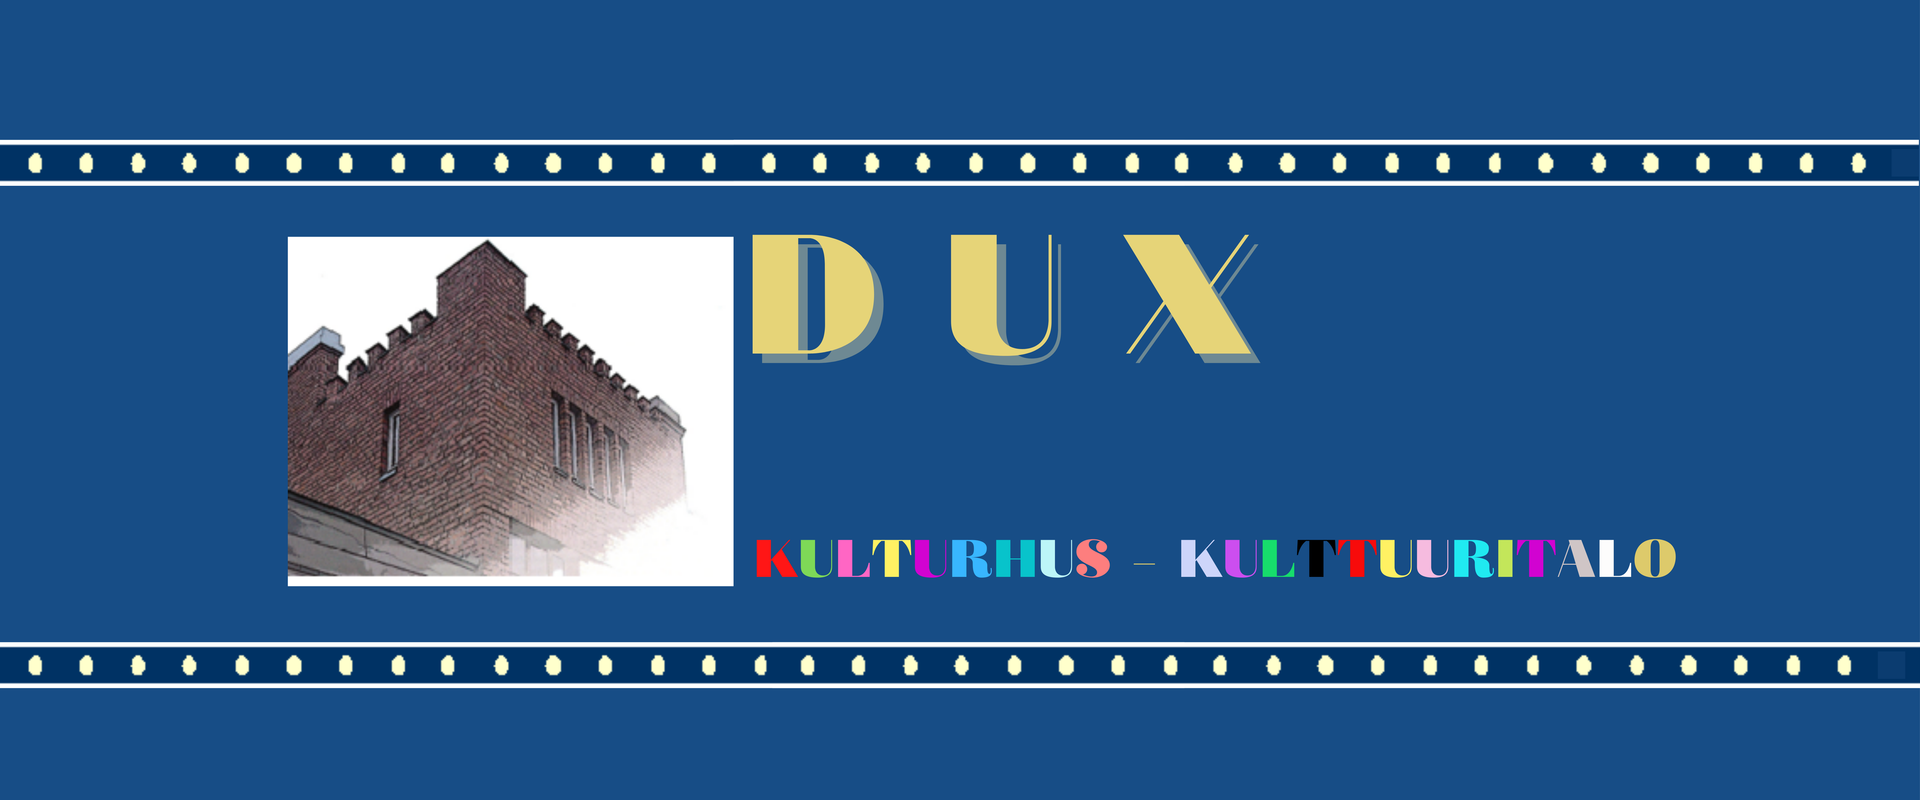 Dux 9